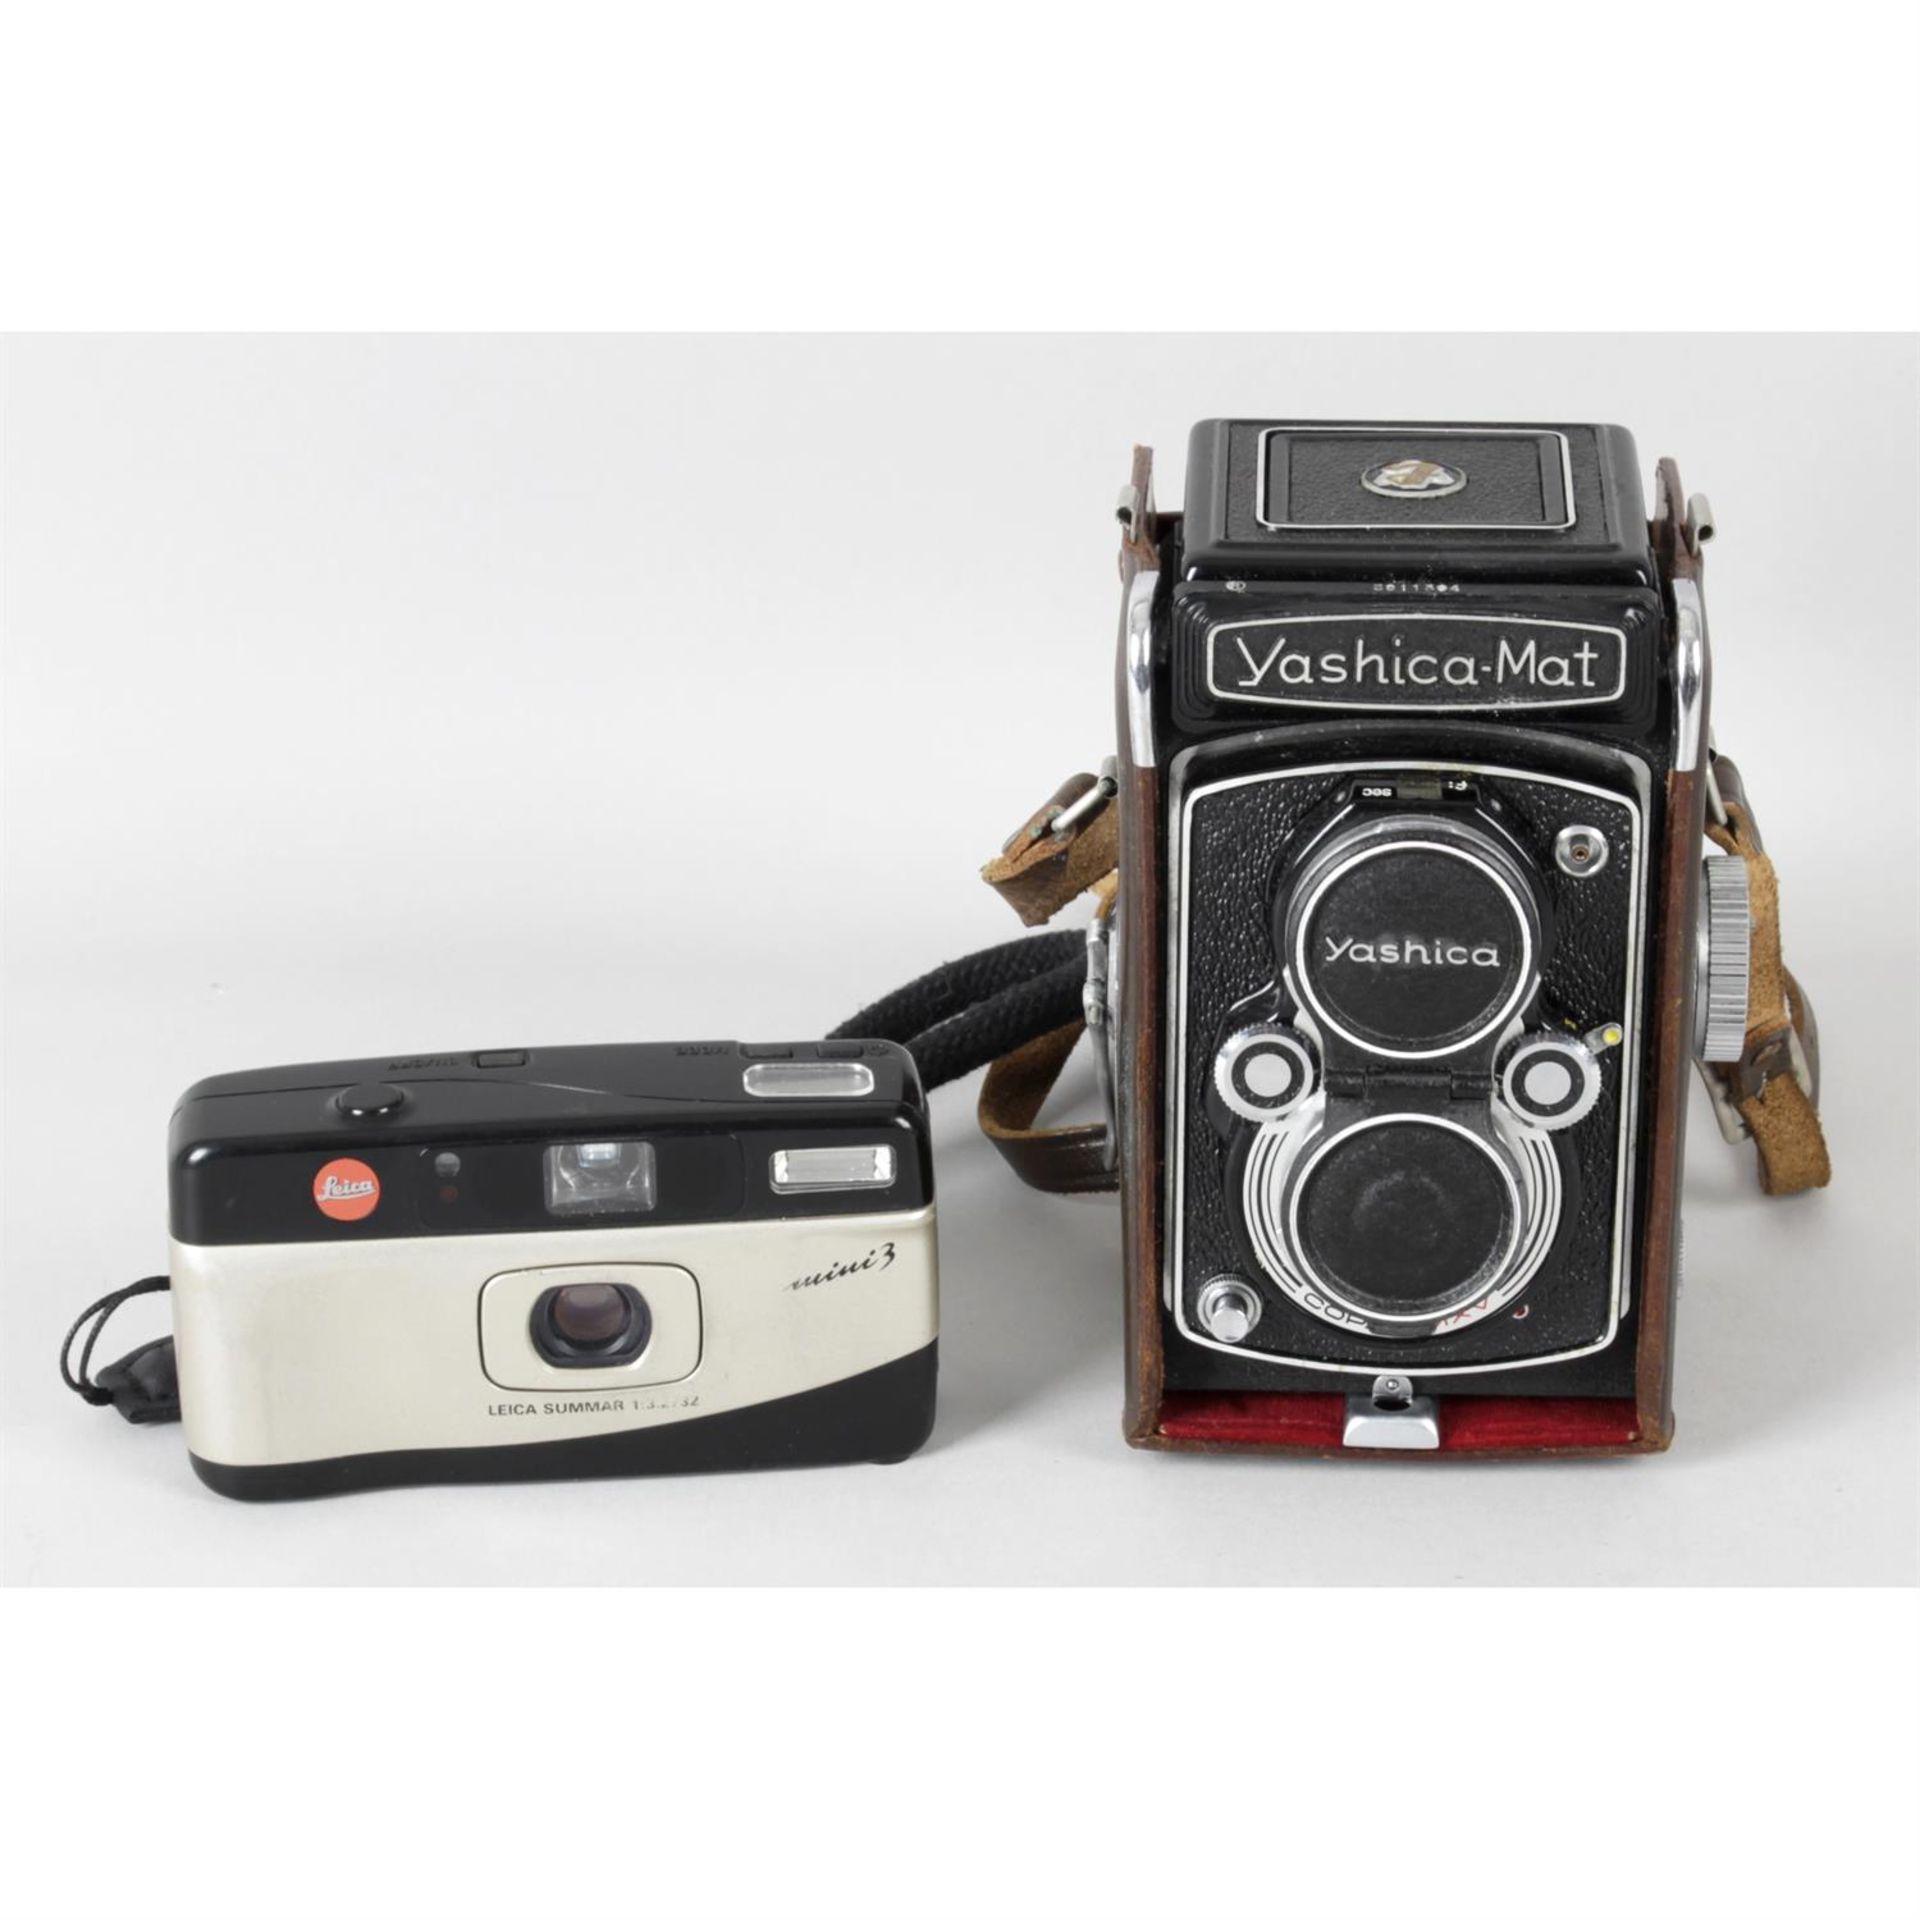 A Leica Sumnar and Yashicamat camera